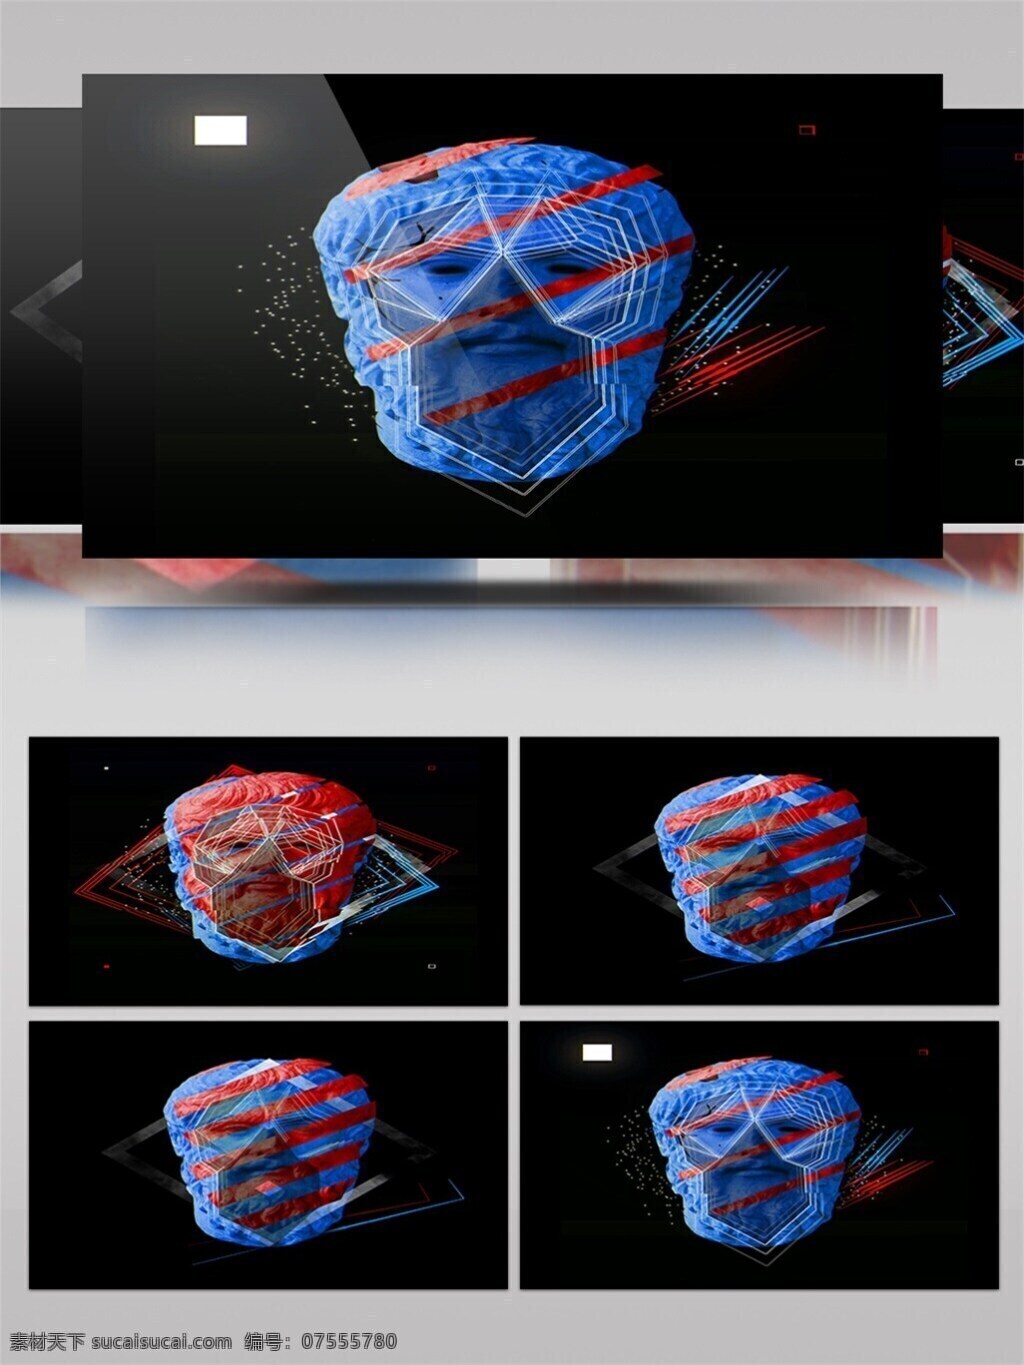 红蓝 撞 色 3d 全息 影像 视频 红蓝撞色 人脸 雕塑 全息影像 视频素材 动态视频素材